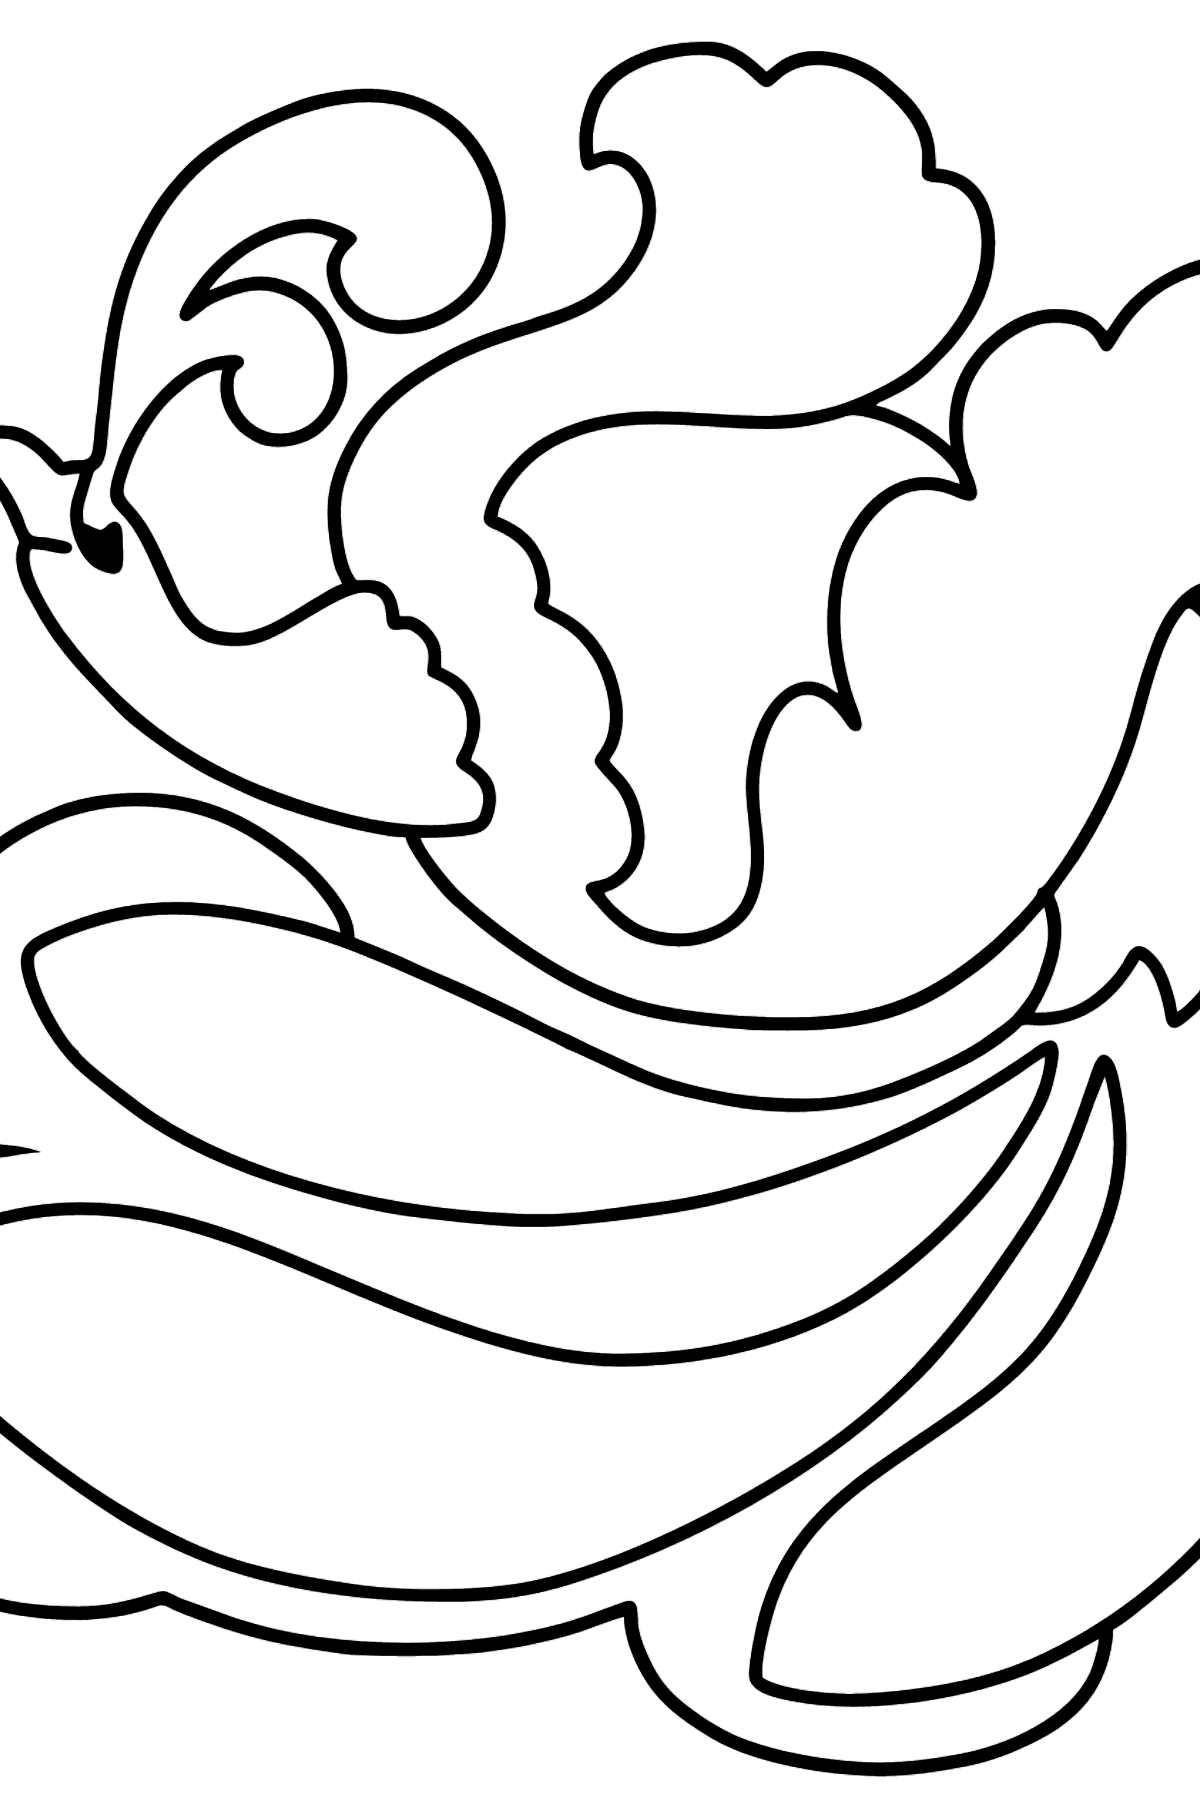 Desenho para colorir do Firebird - Imagens para Colorir para Crianças